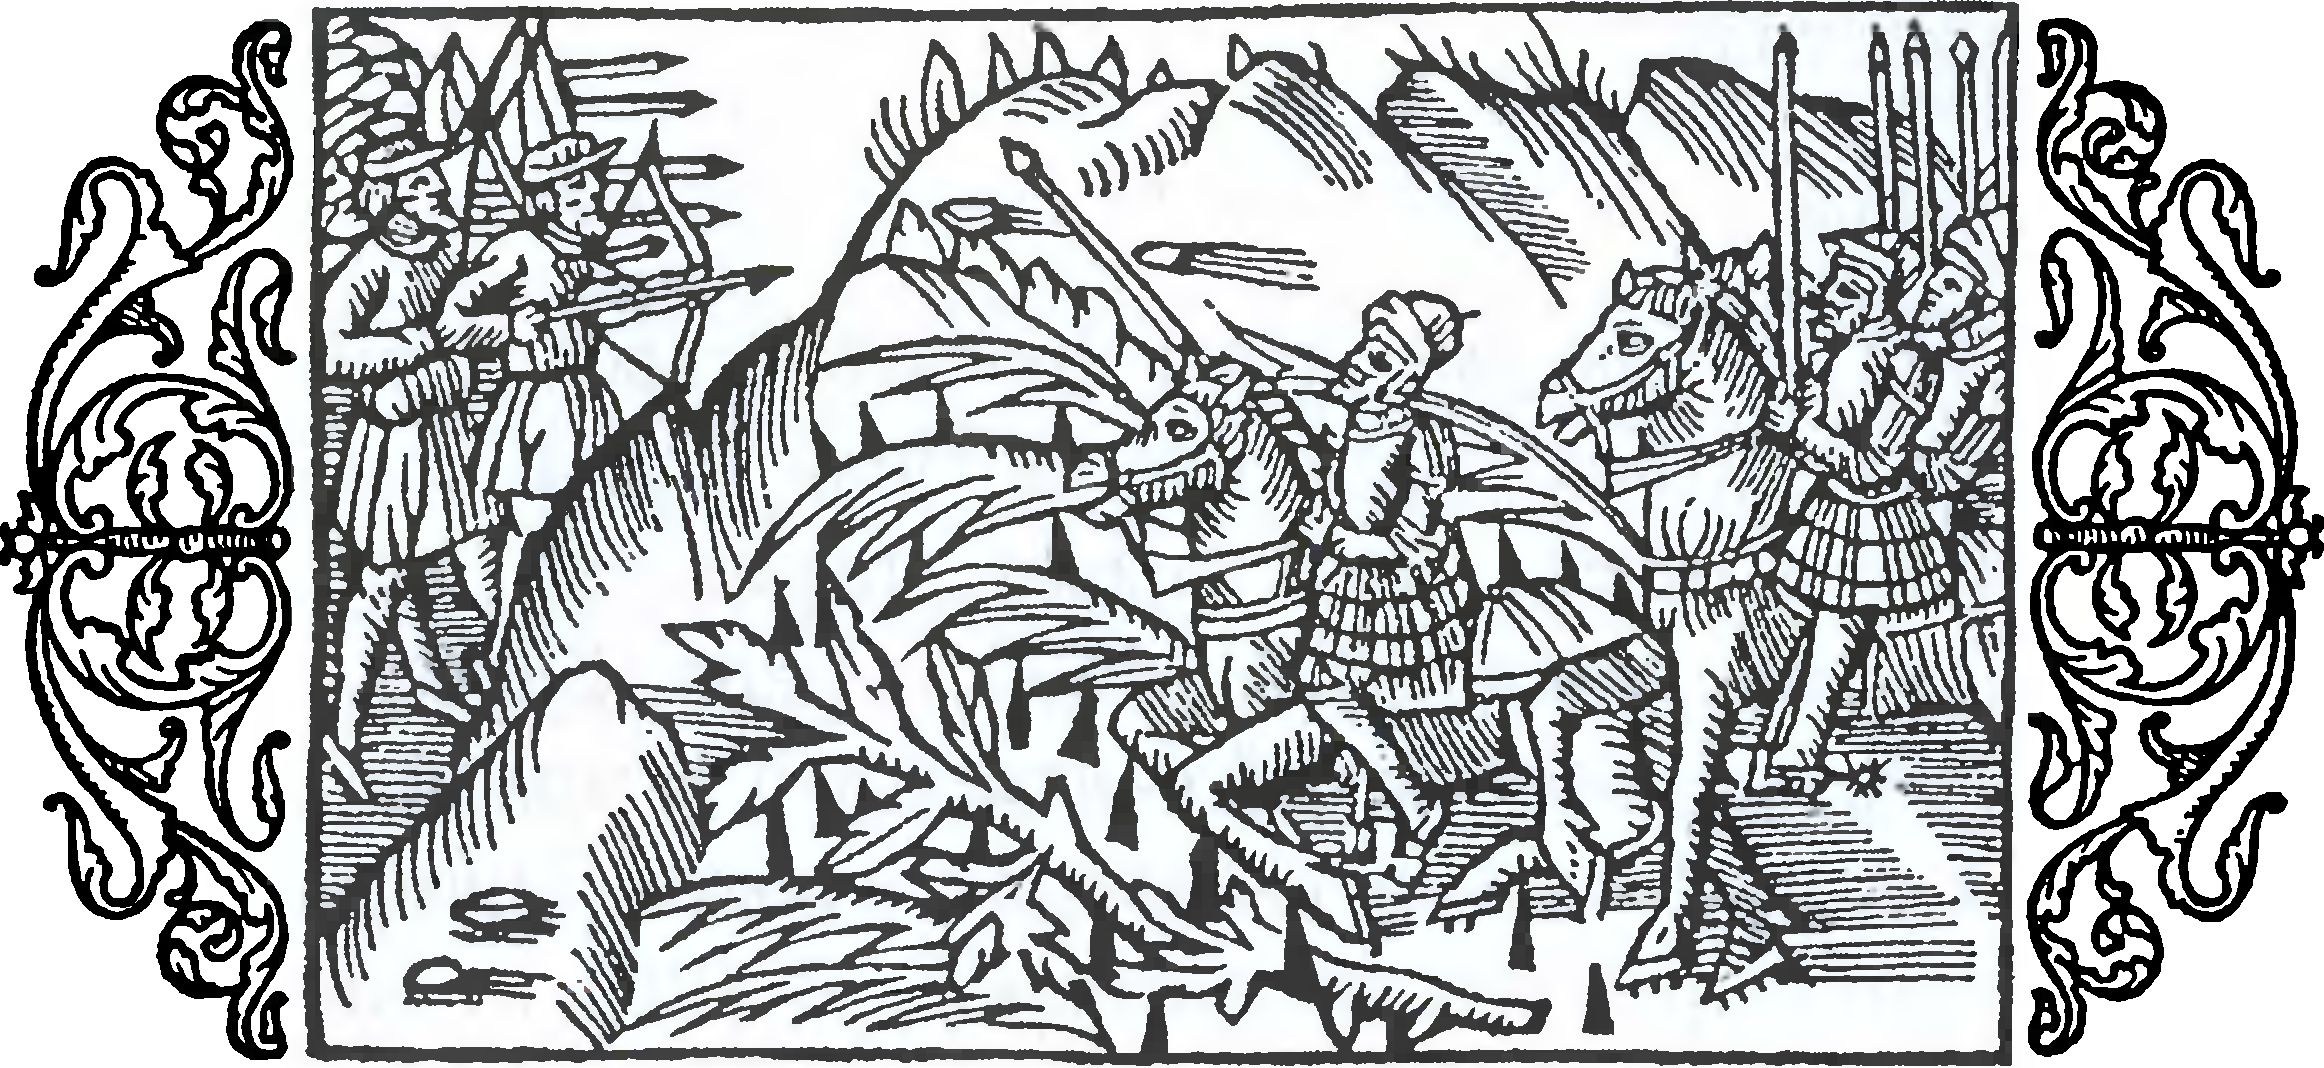 Поход в чужую землю: ловушки, лесные завалы, неожиданные нападения. Гравюра книги Олафа Магнуса «История северных народов» (1555 г.)